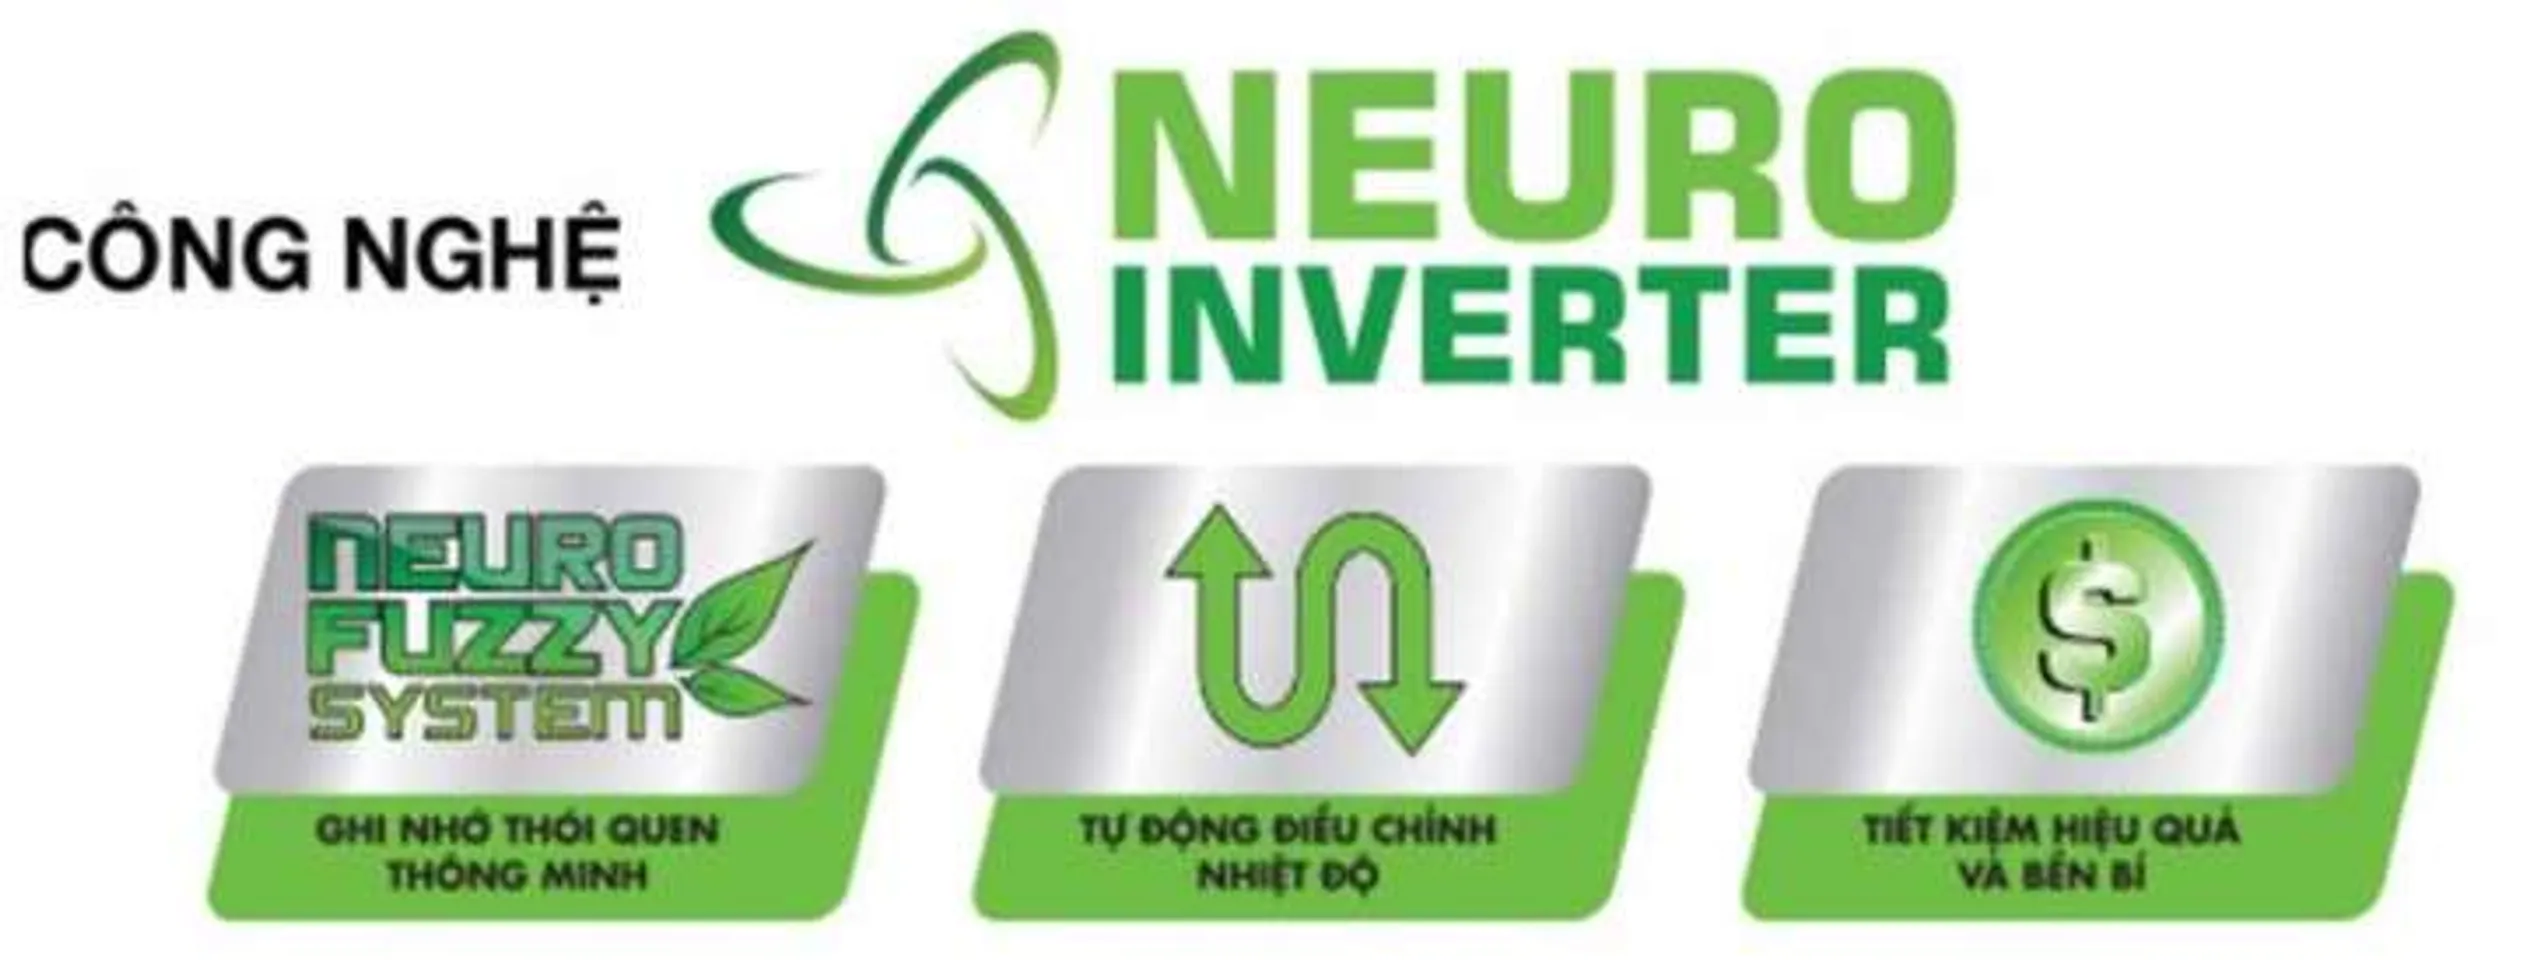 Công nghệ Neuro inverter